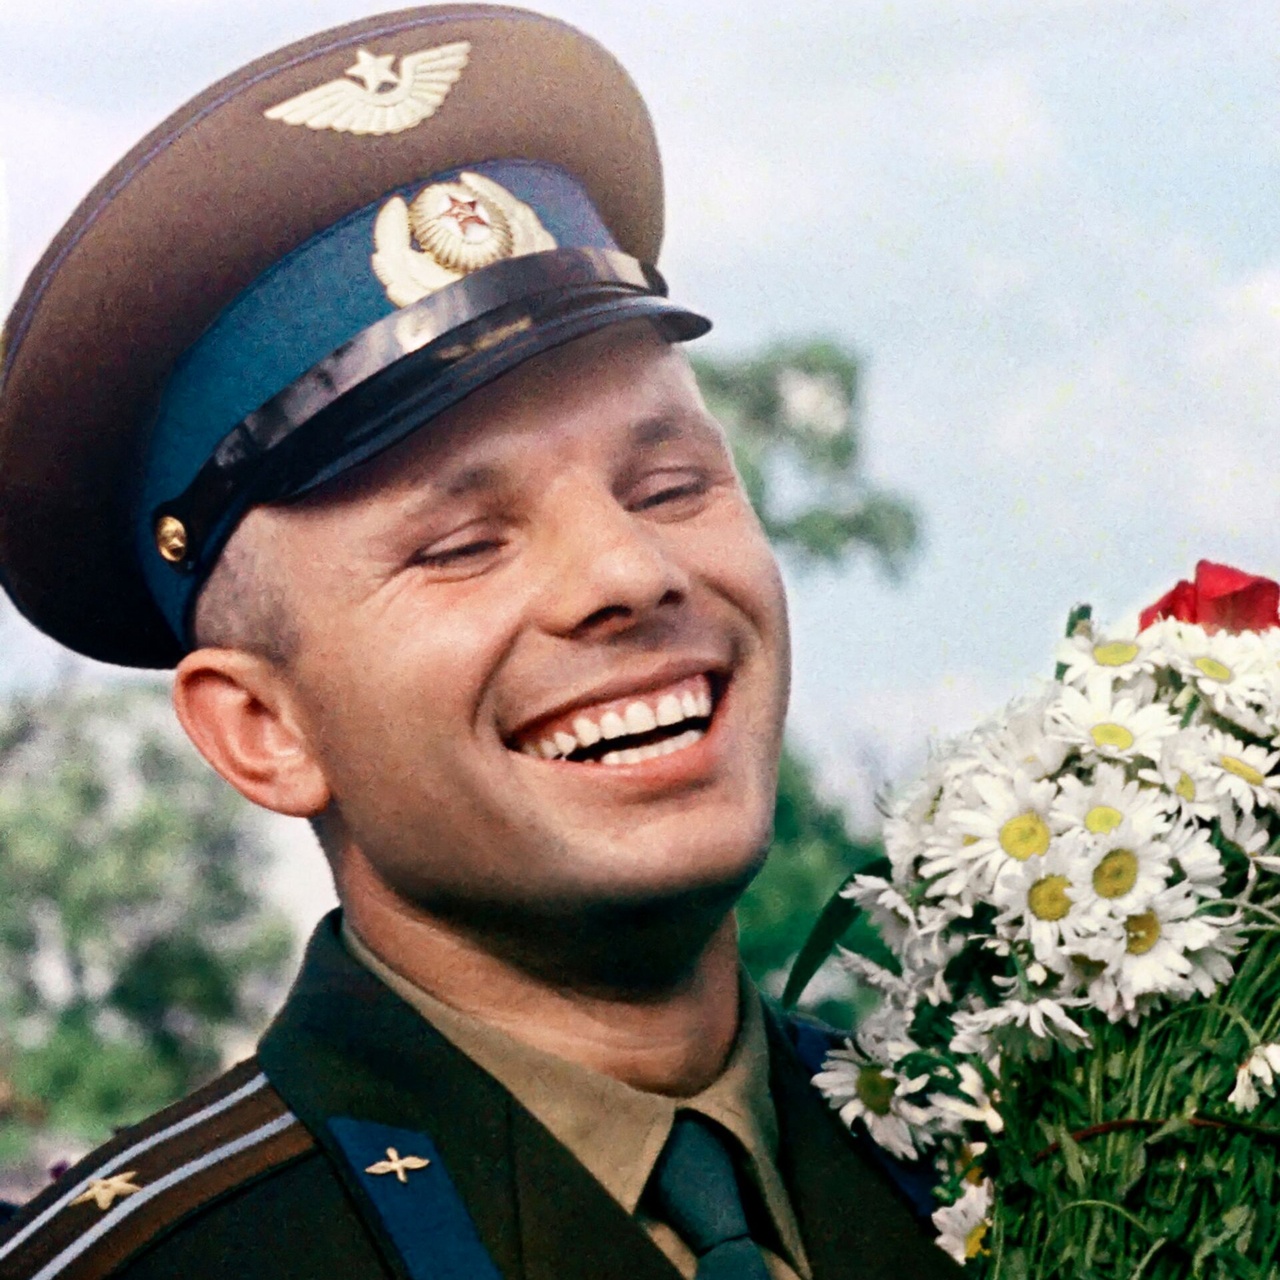 Сегодня первооткрывателю космоса Юрию Гагарину исполнилось бы 90 лет